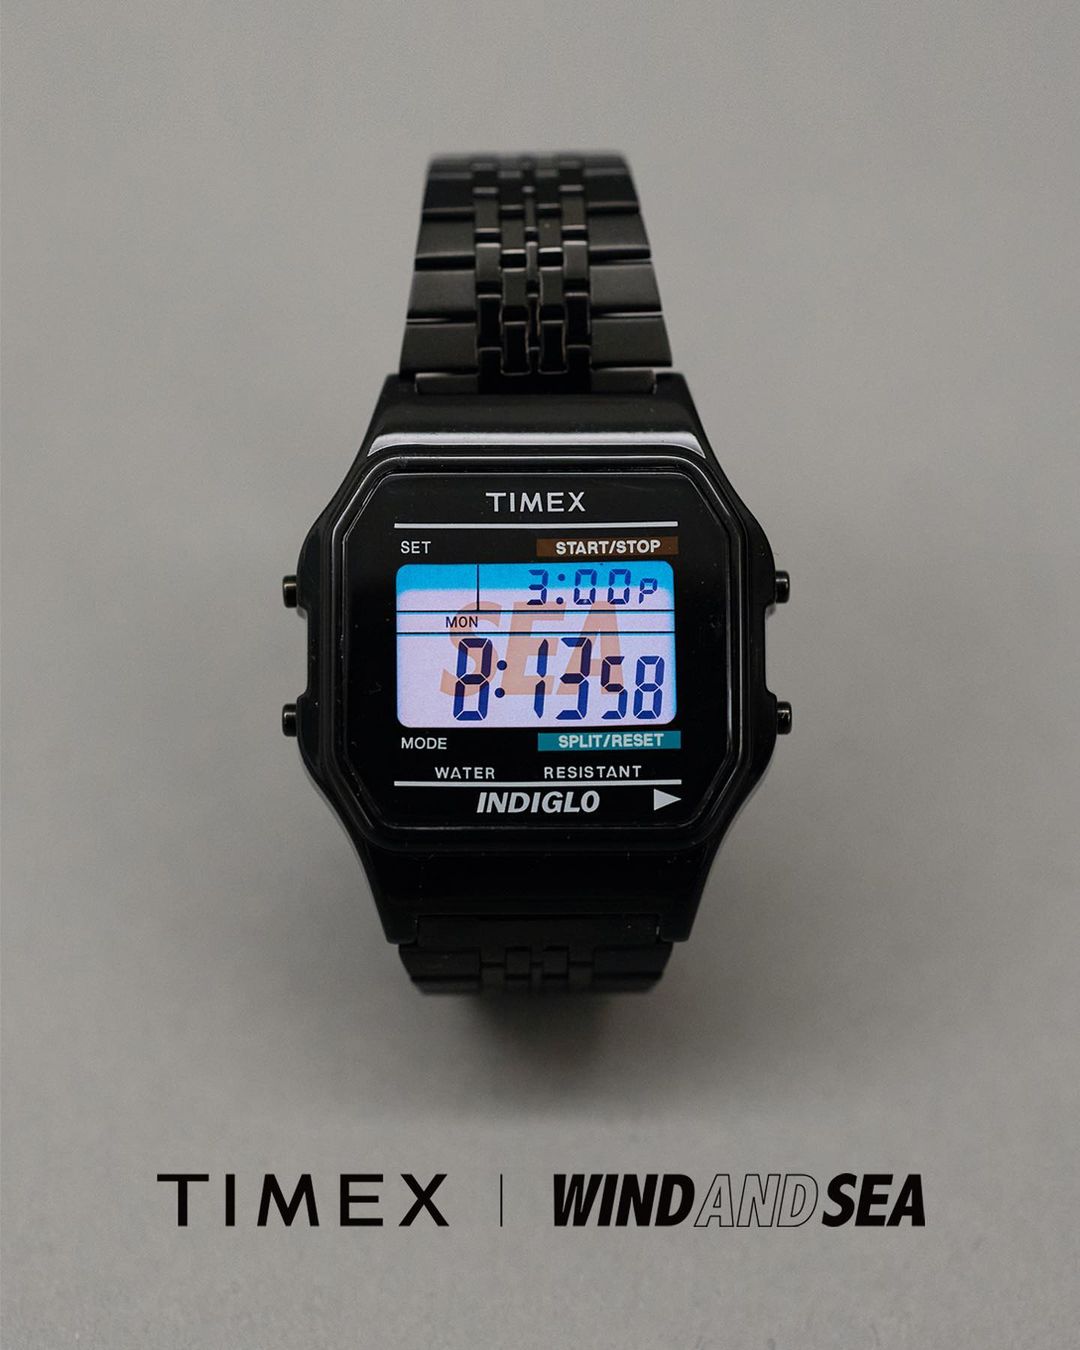 WIND AND SEA TIMEX ⌚️ | www.fleettracktz.com